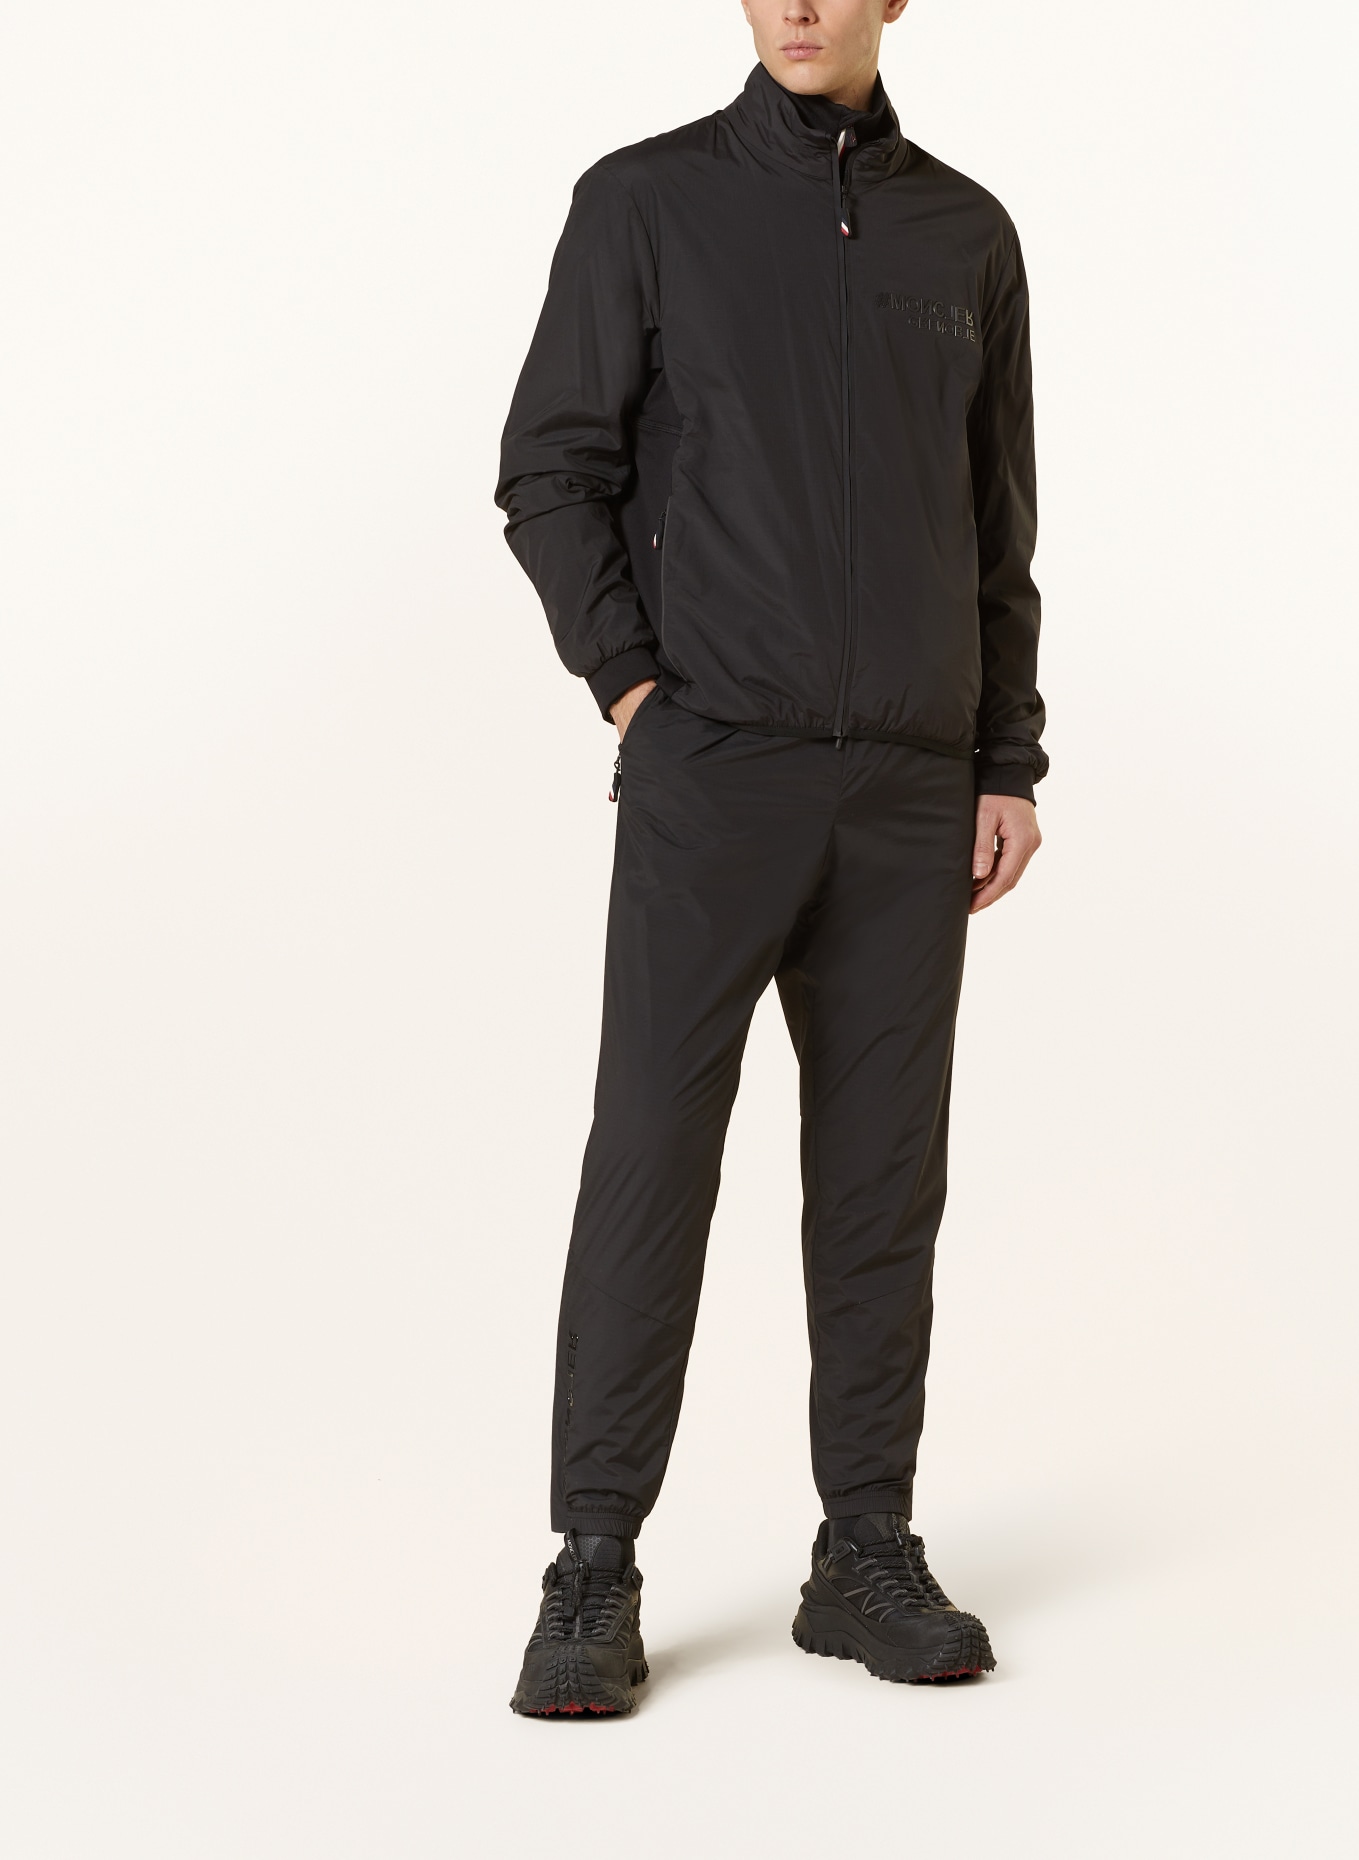 MONCLER GRENOBLE Hybrid jacket DORON, Color: BLACK (Image 2)